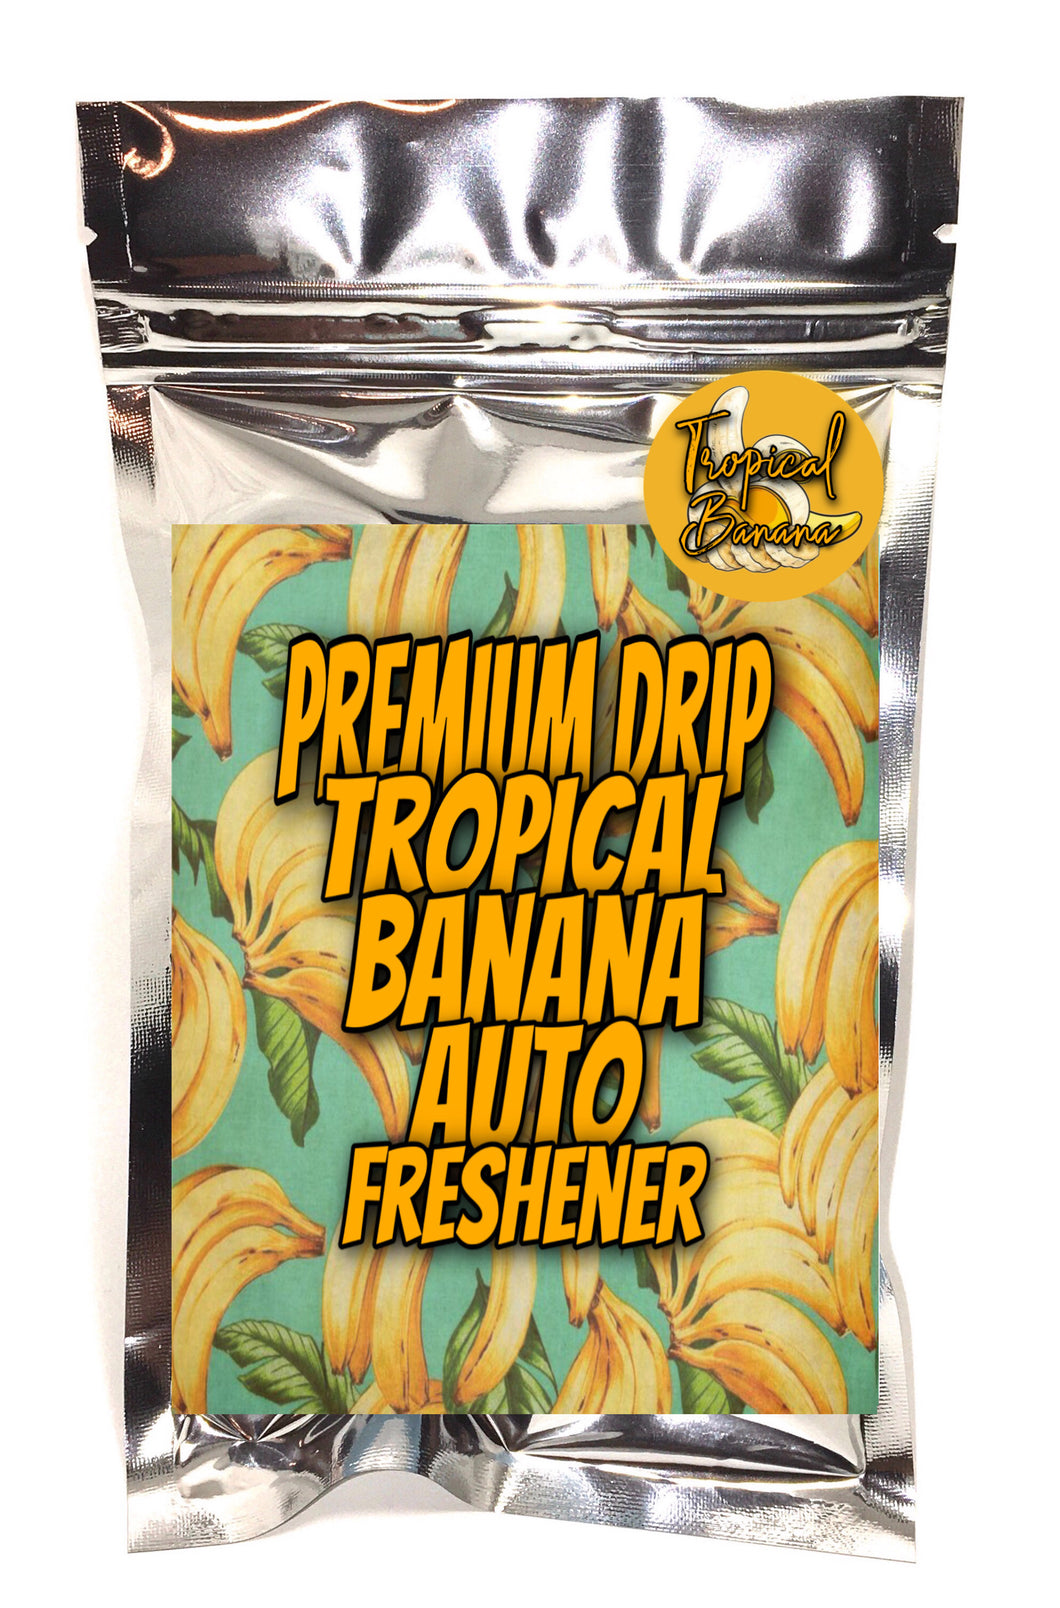 Premium Drip Auto Freshener Tropical Banana Sauce Pack